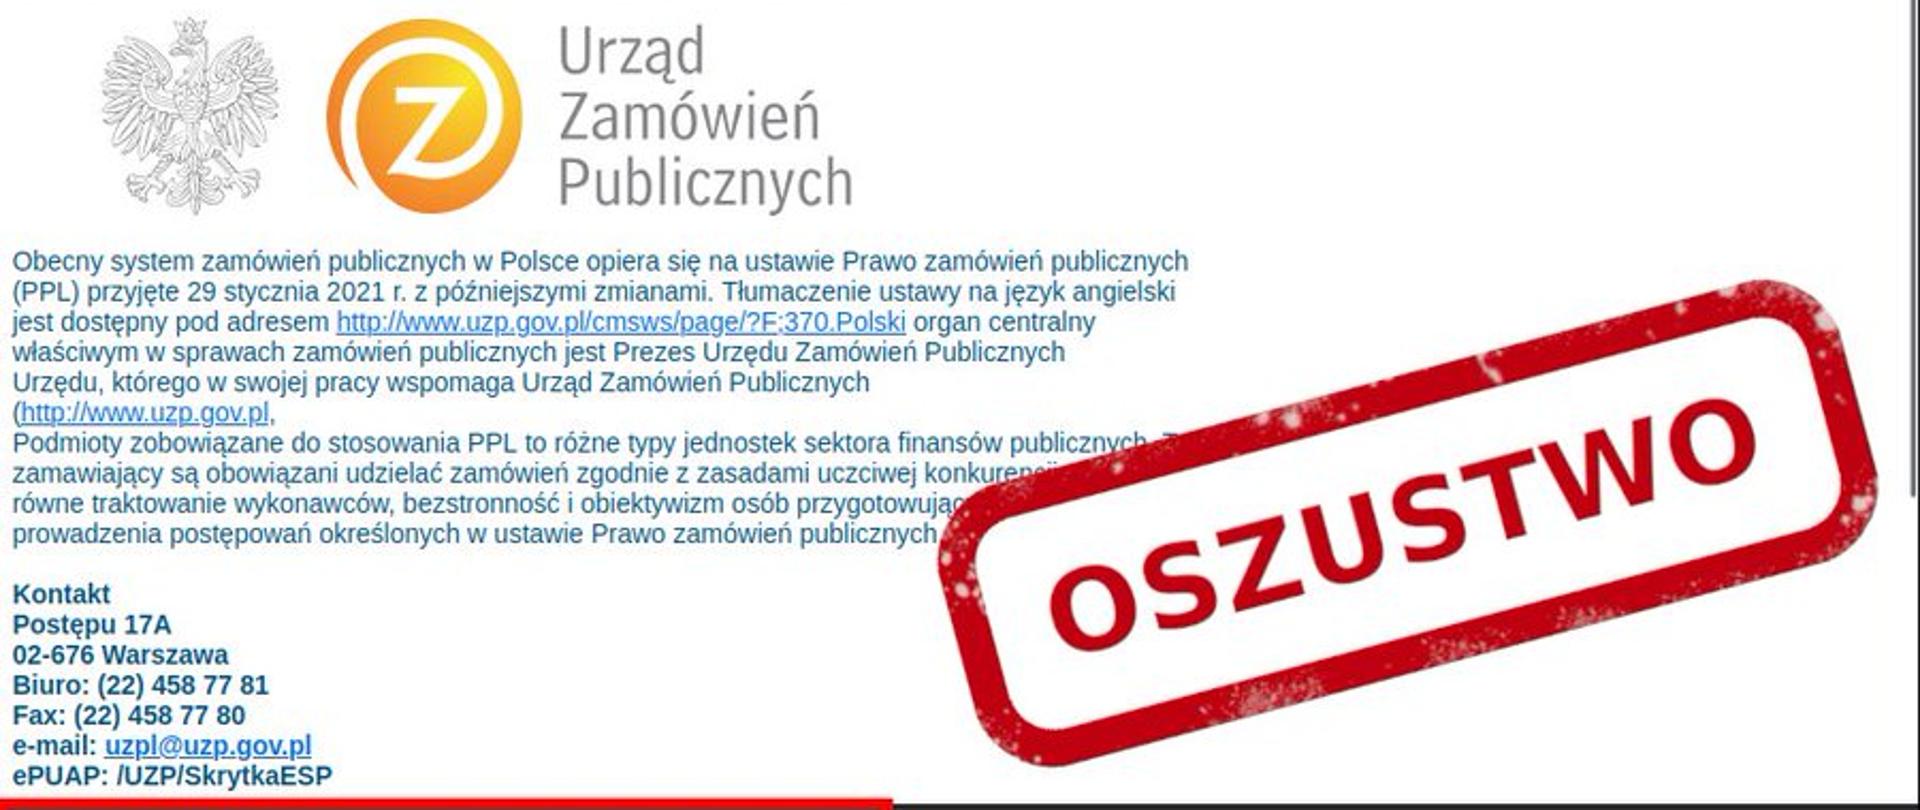 Zdjęcie fałszywej wiadomości e-mail, podszywającej się pod Urząd Zamówień Publicznych. Po prawej stronie czerwony napis OSZUSTWO